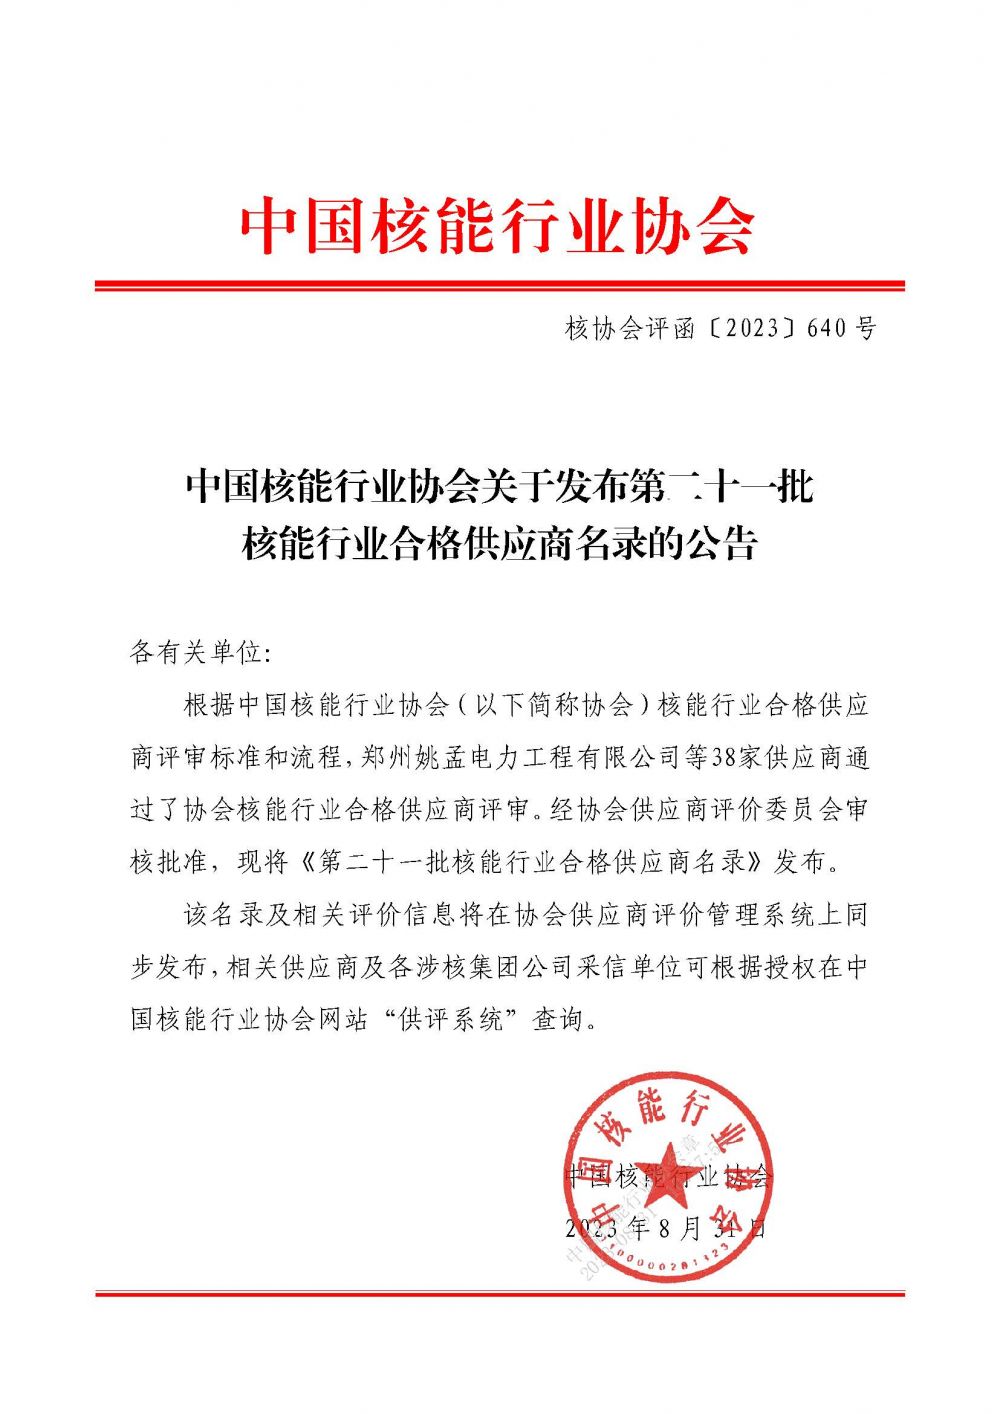 中国核能行业协会关于发布第二十一批核能行业合格供应商名录的公告_页面_1.jpg